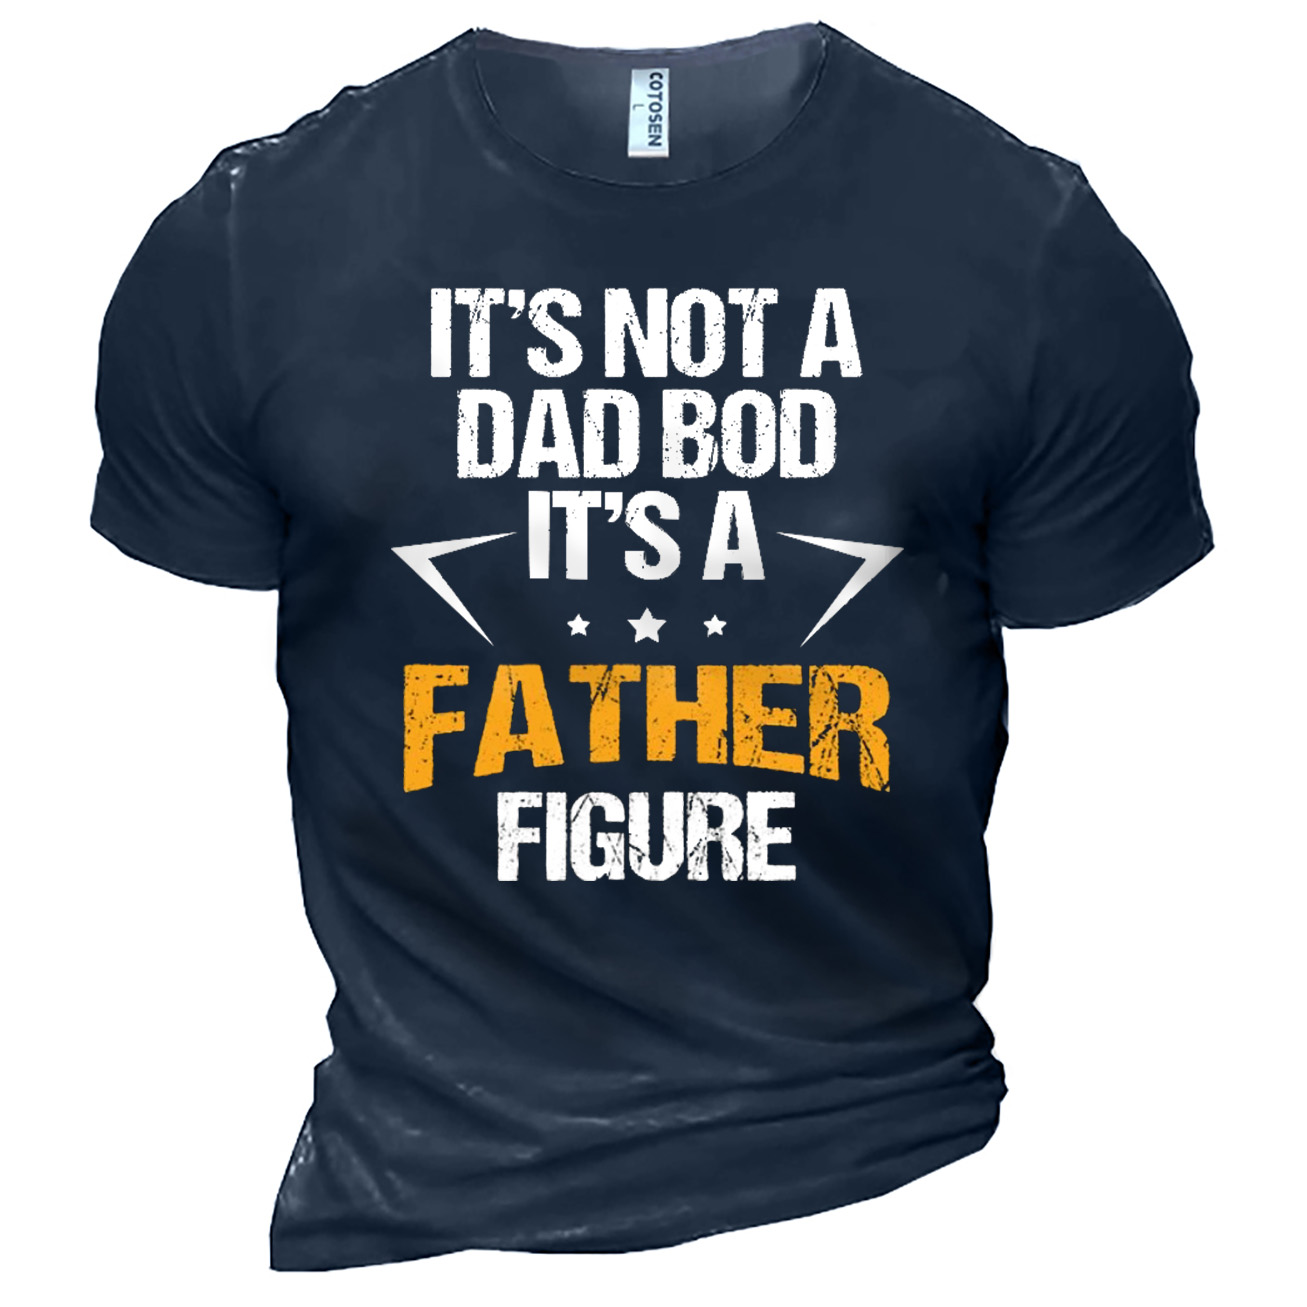 Men's It's A Father Chic Figure Print Cotton T-shirt